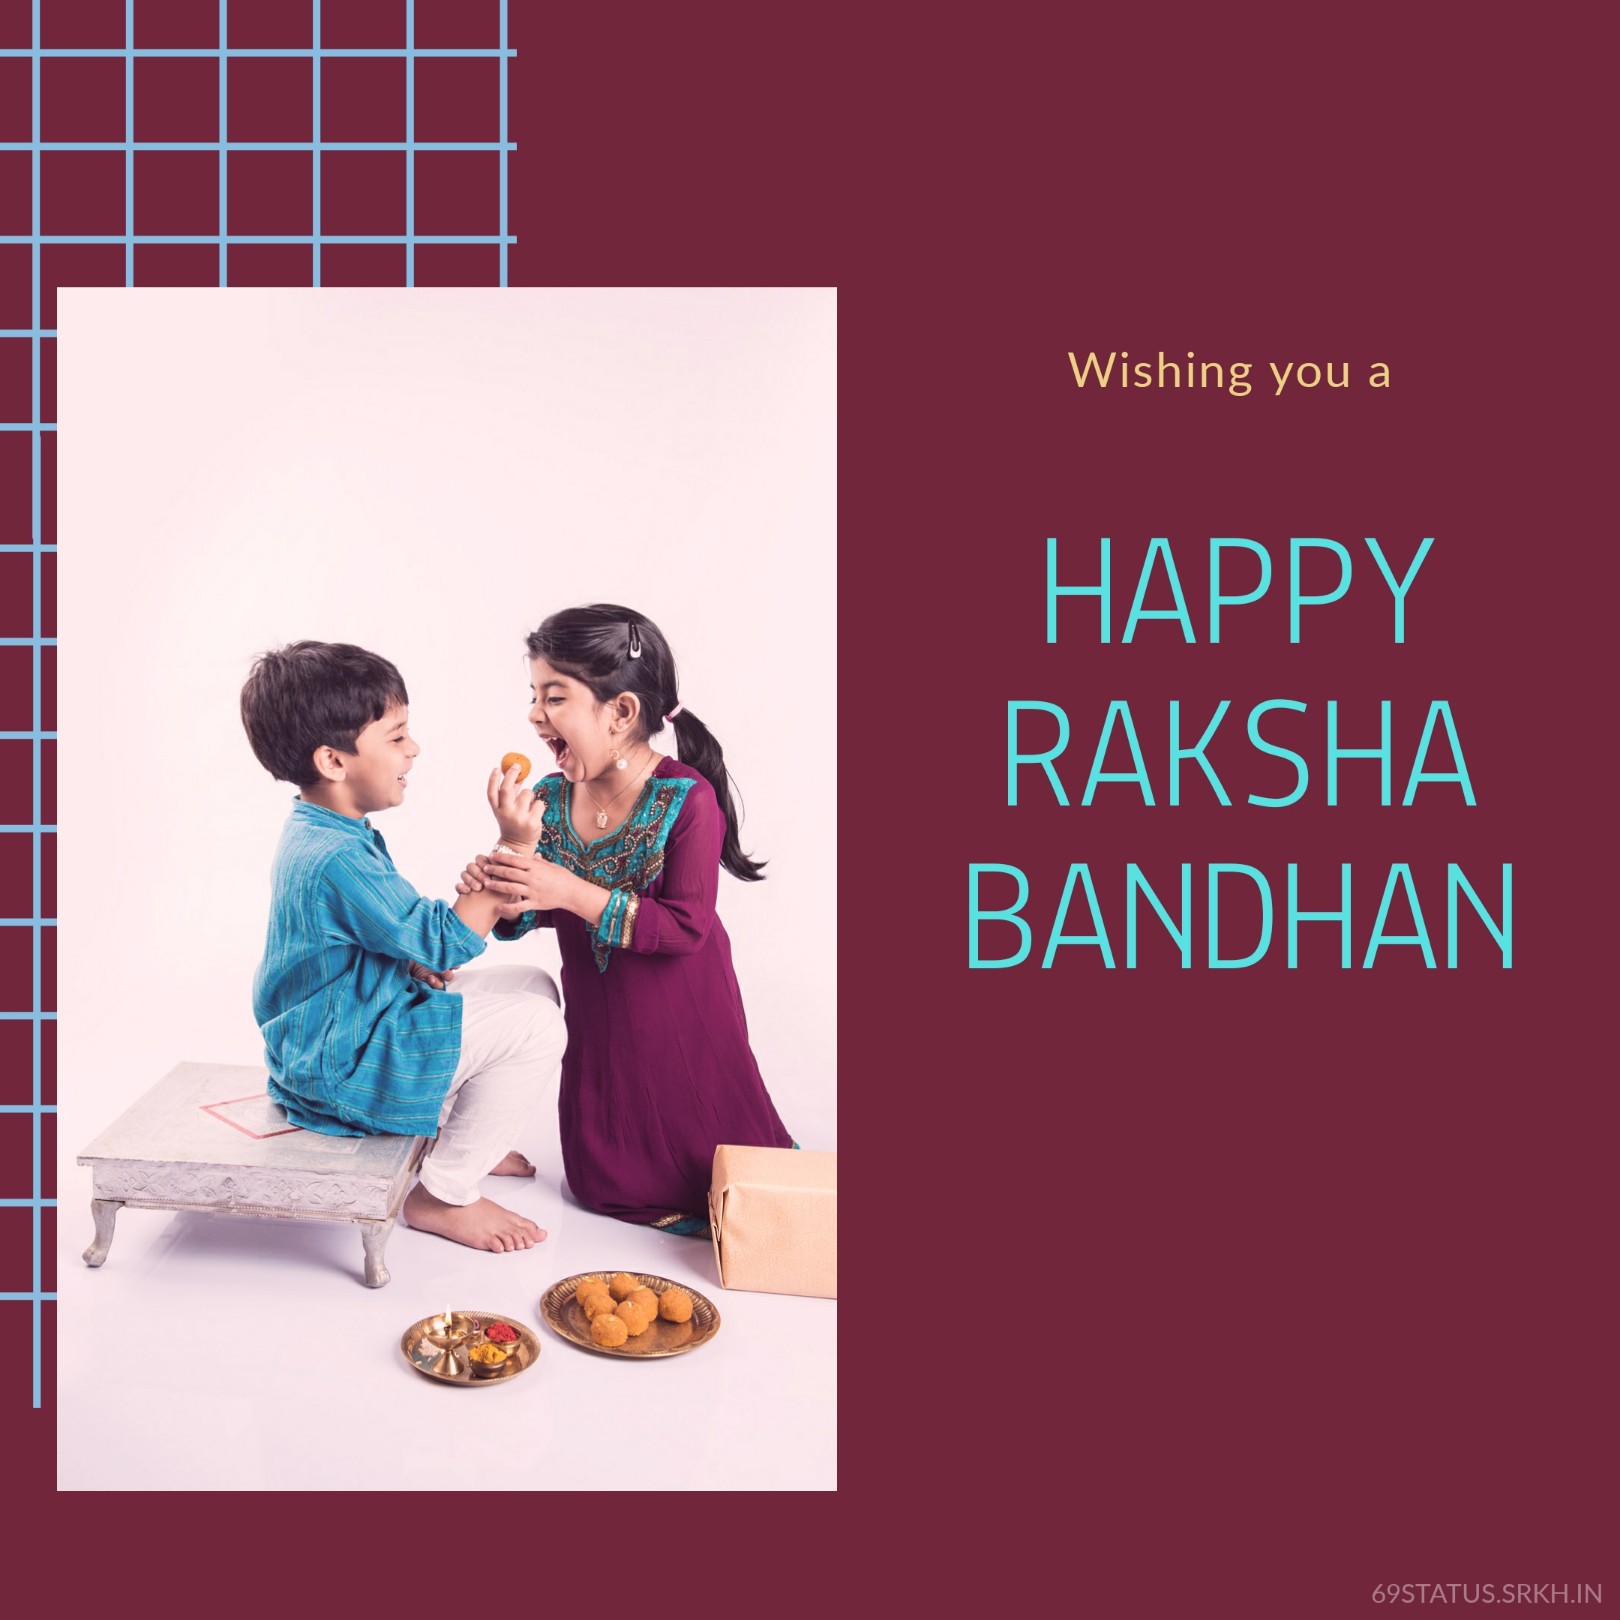 Images of Raksha Bandhan